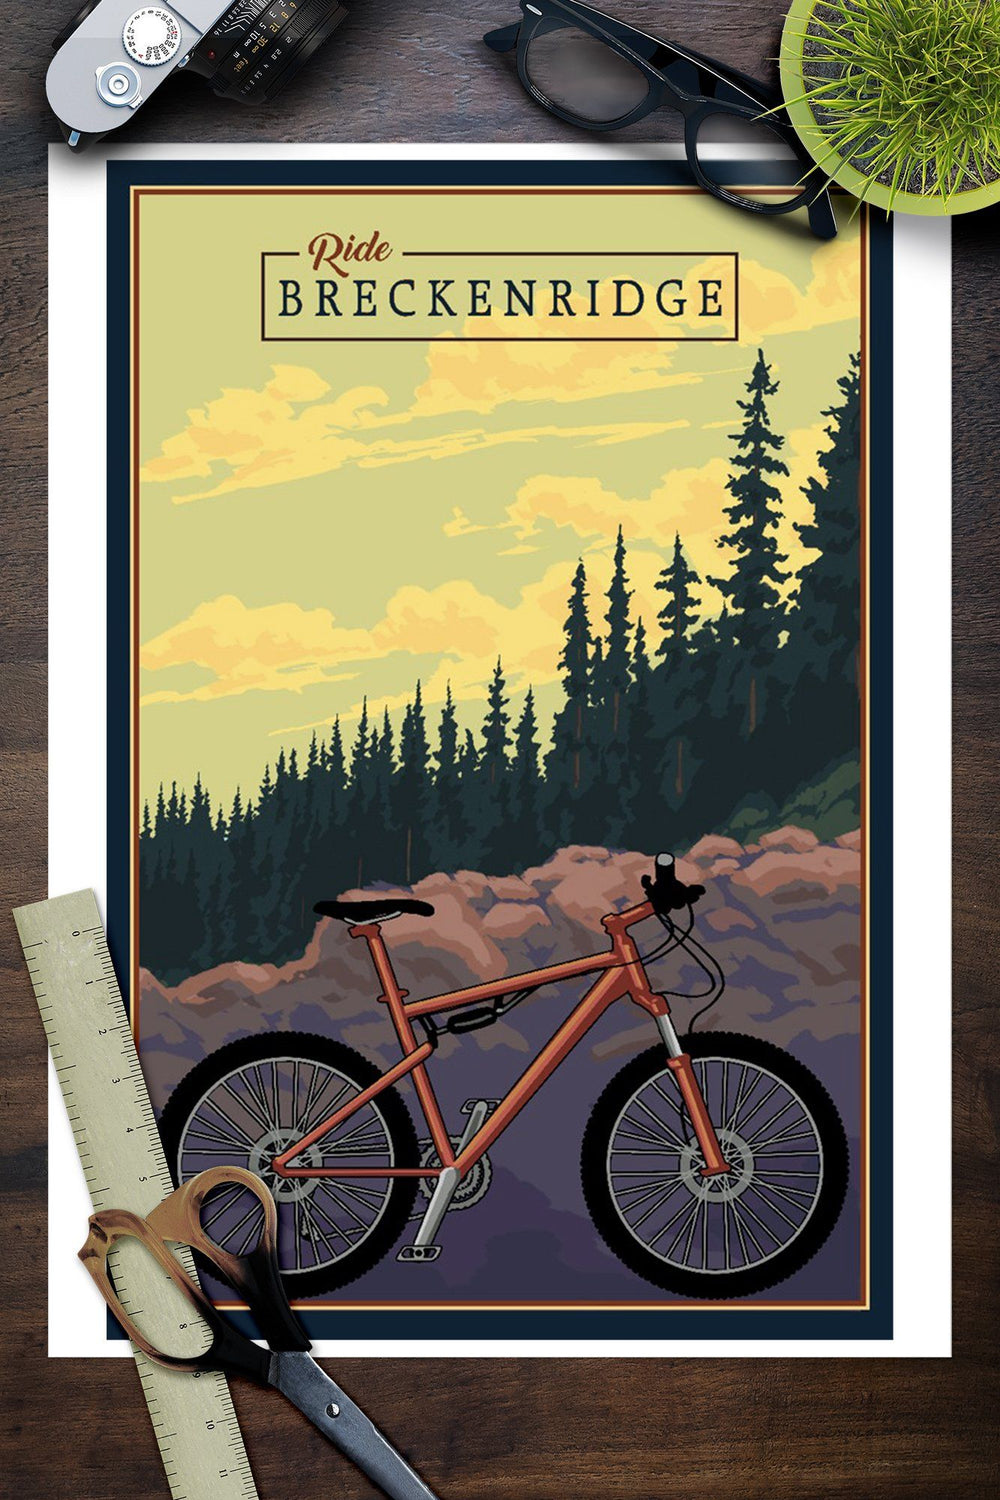 Breckenridge, Colorado, Mountain Bike, Ride the Trails, Lantern Press Artwork, Art Prints and Metal Signs Art Lantern Press 